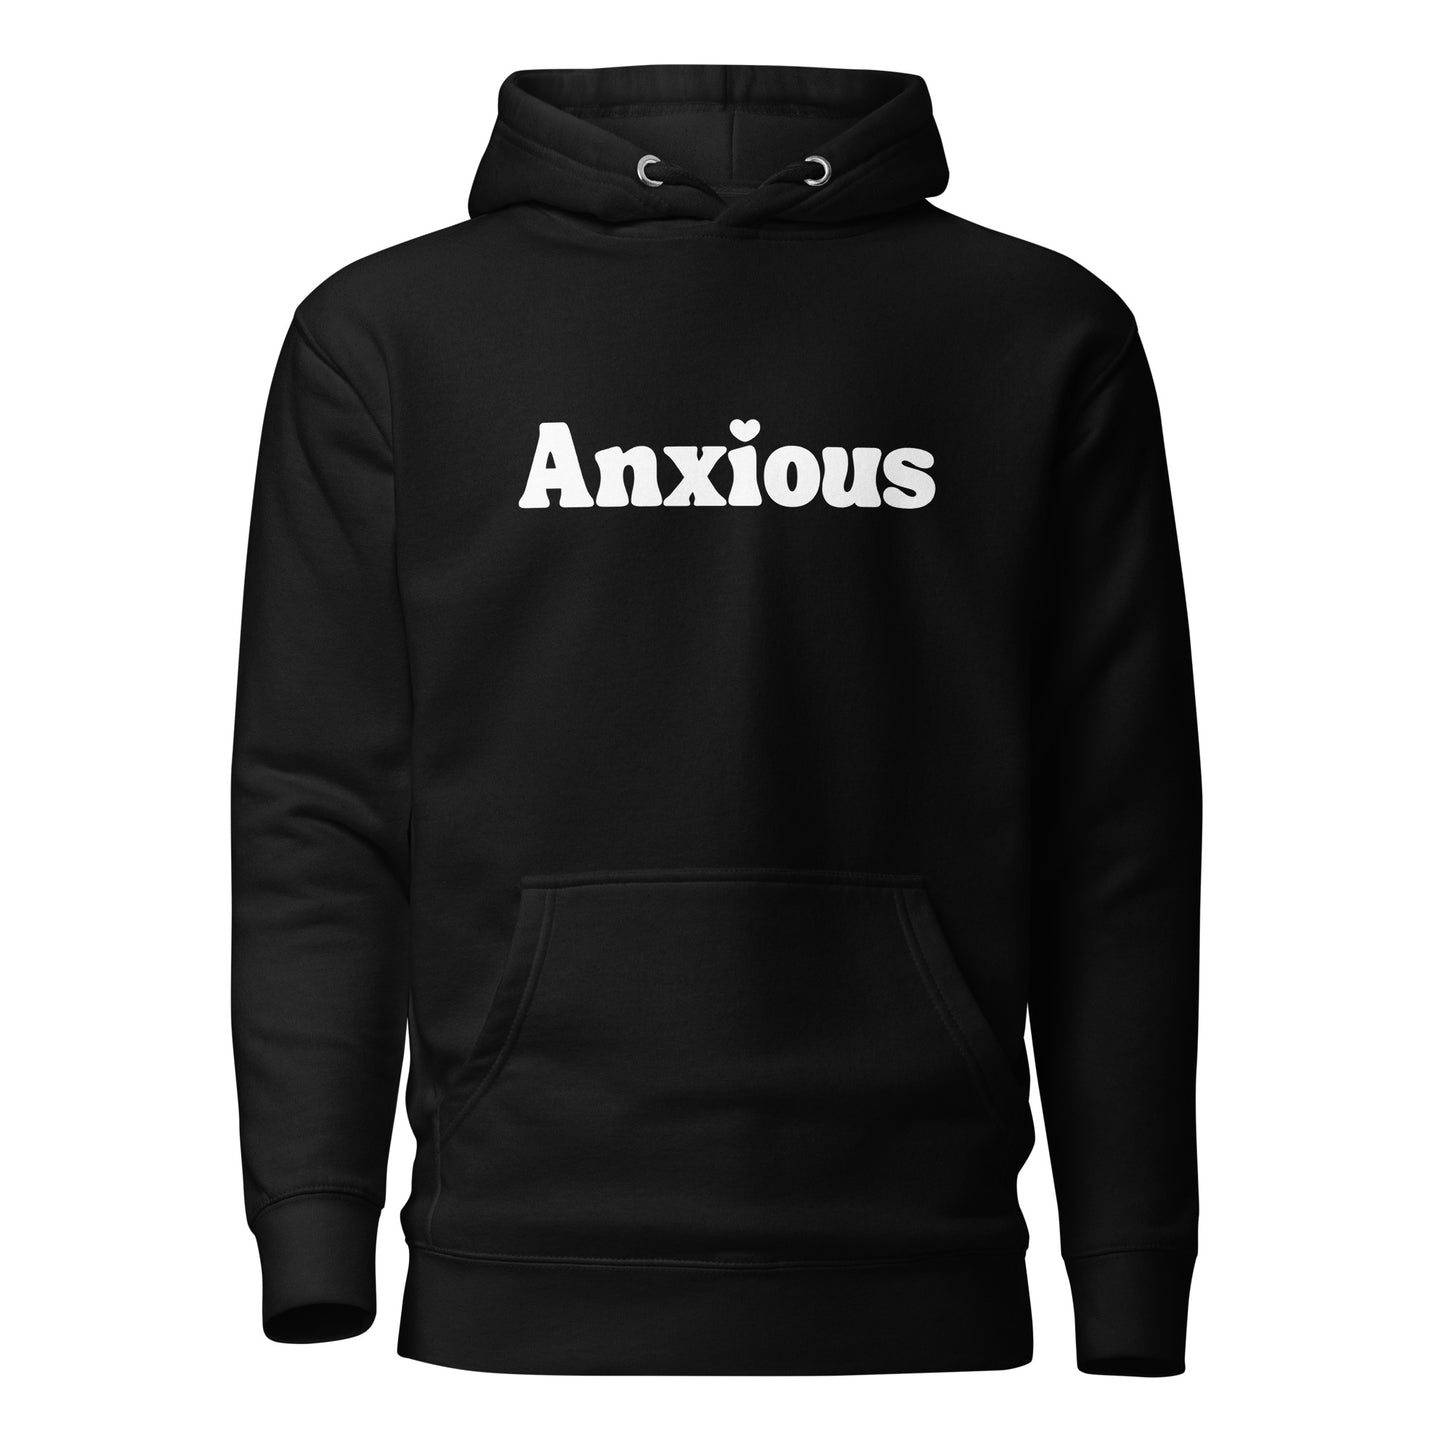 "Anxious" Hoodie